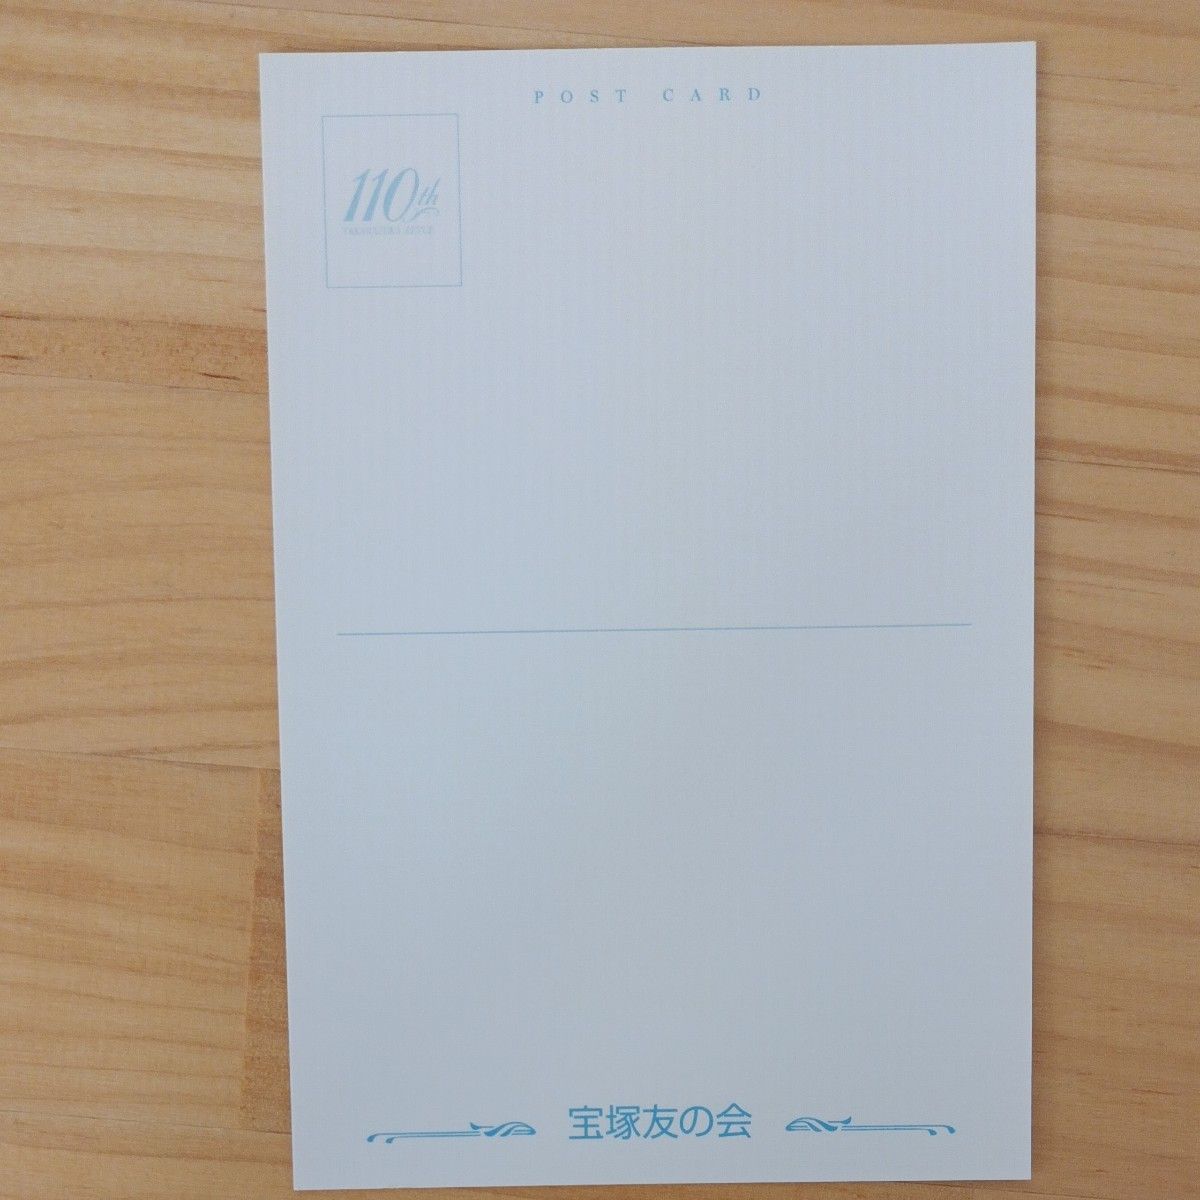 宝塚歌劇団 110周年 友の会 オリジナル ポストカード 7枚 TAKARAZUKA 110